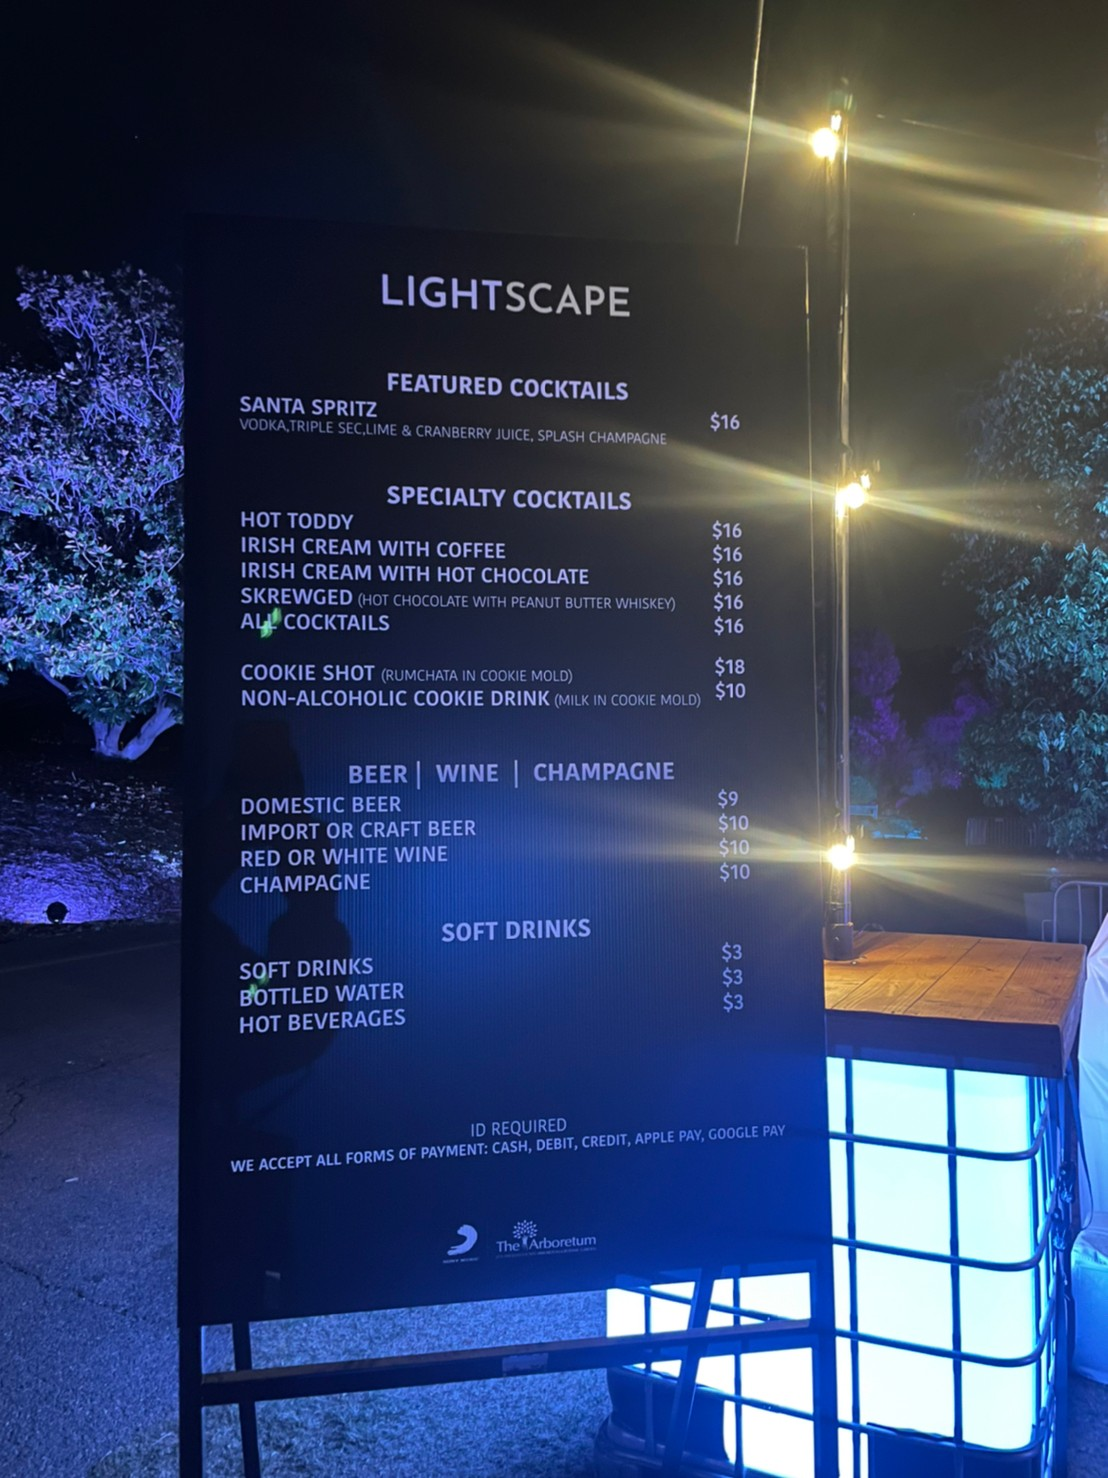 los angeles arboretum lightscape menu